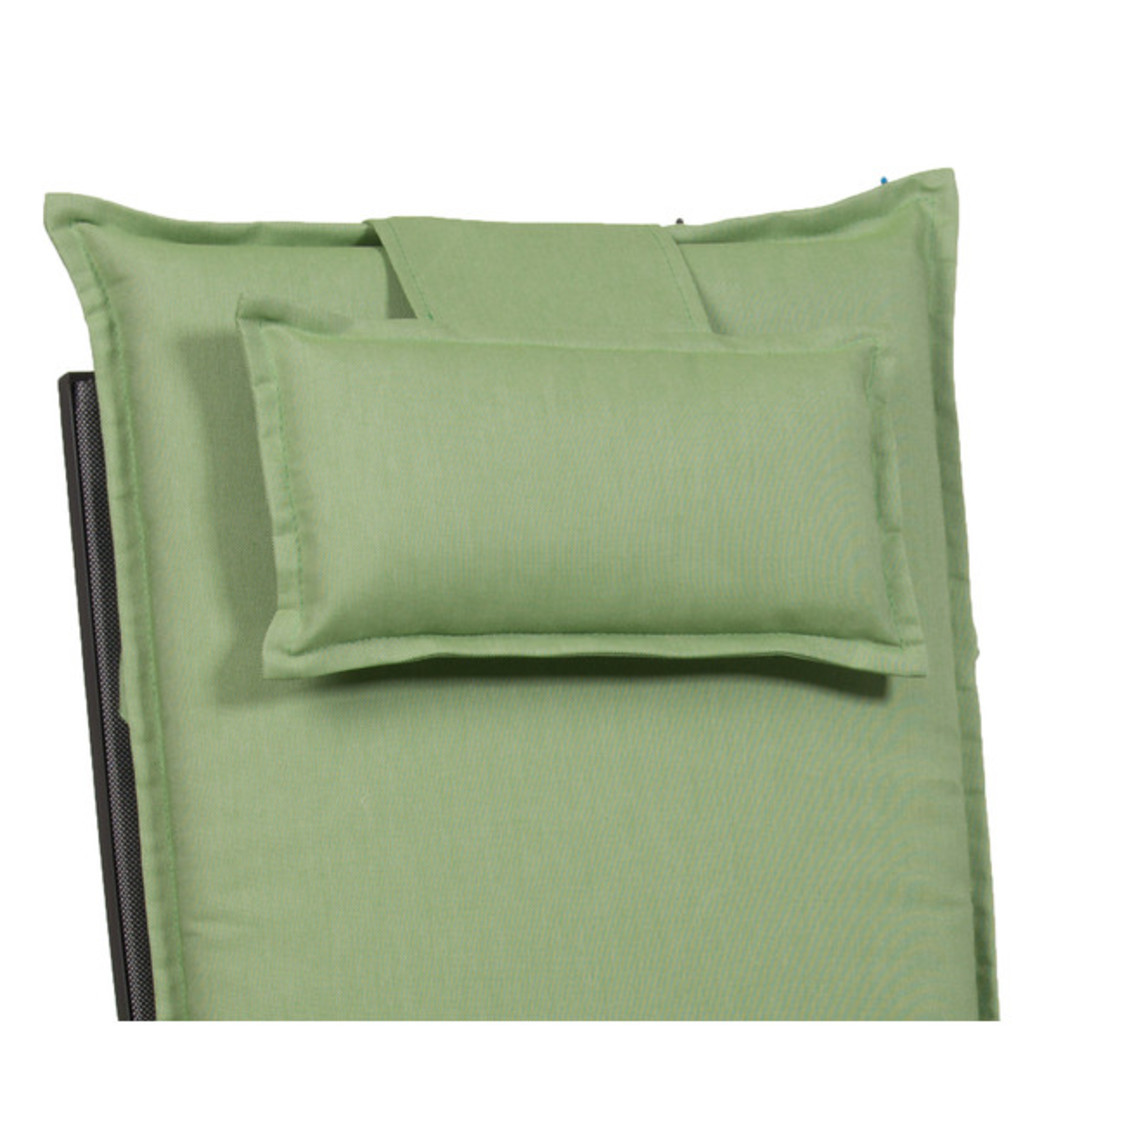 COHOSO® Nackenkissen für Gartenstühle mit Gegengewicht